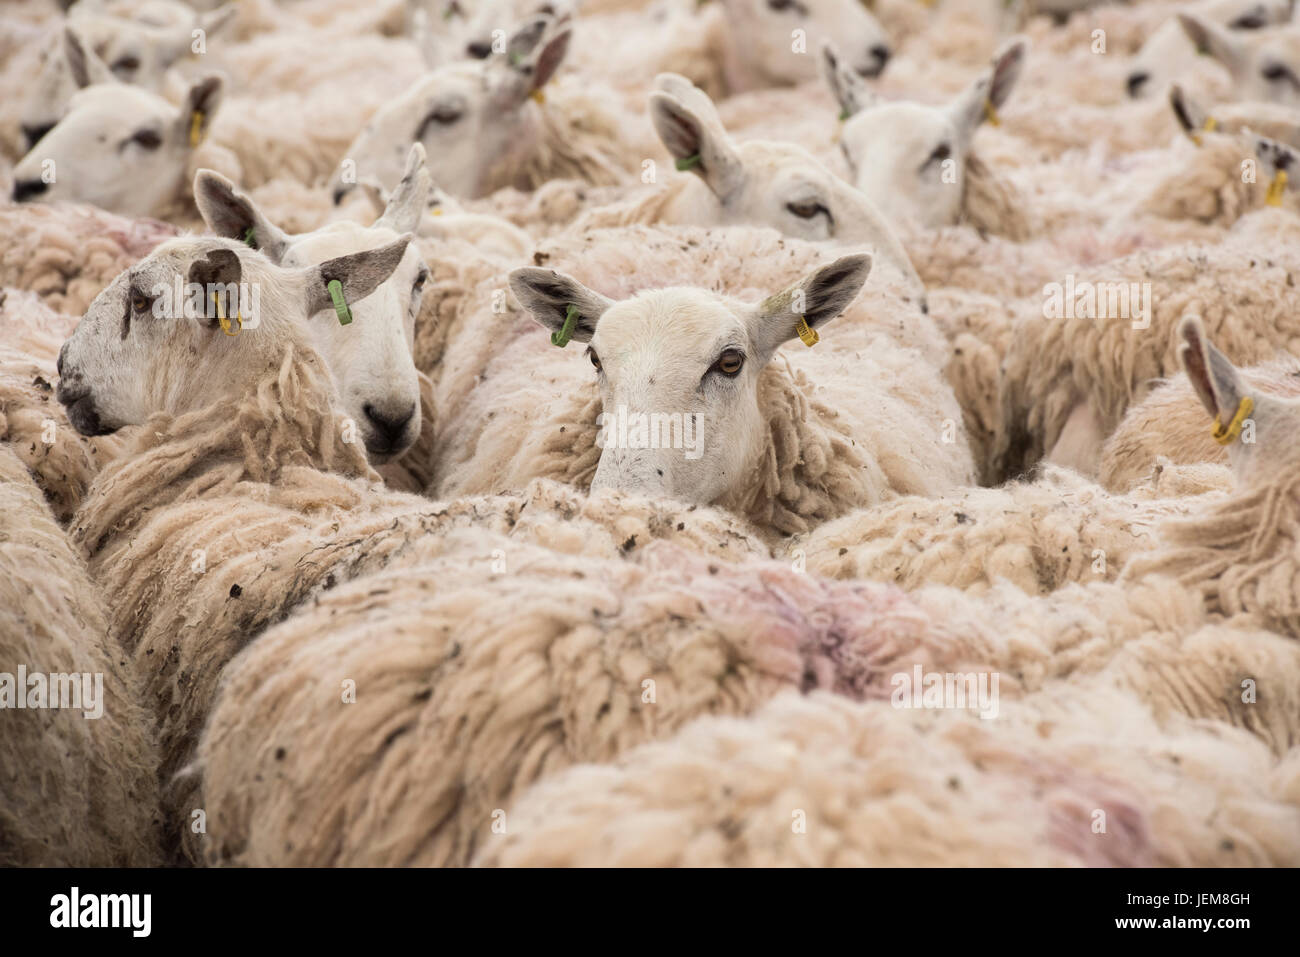 Ovis aries. Rebaño de ovejas en un corral esperando esquila en un espectáculo agrícola. REINO UNIDO Foto de stock